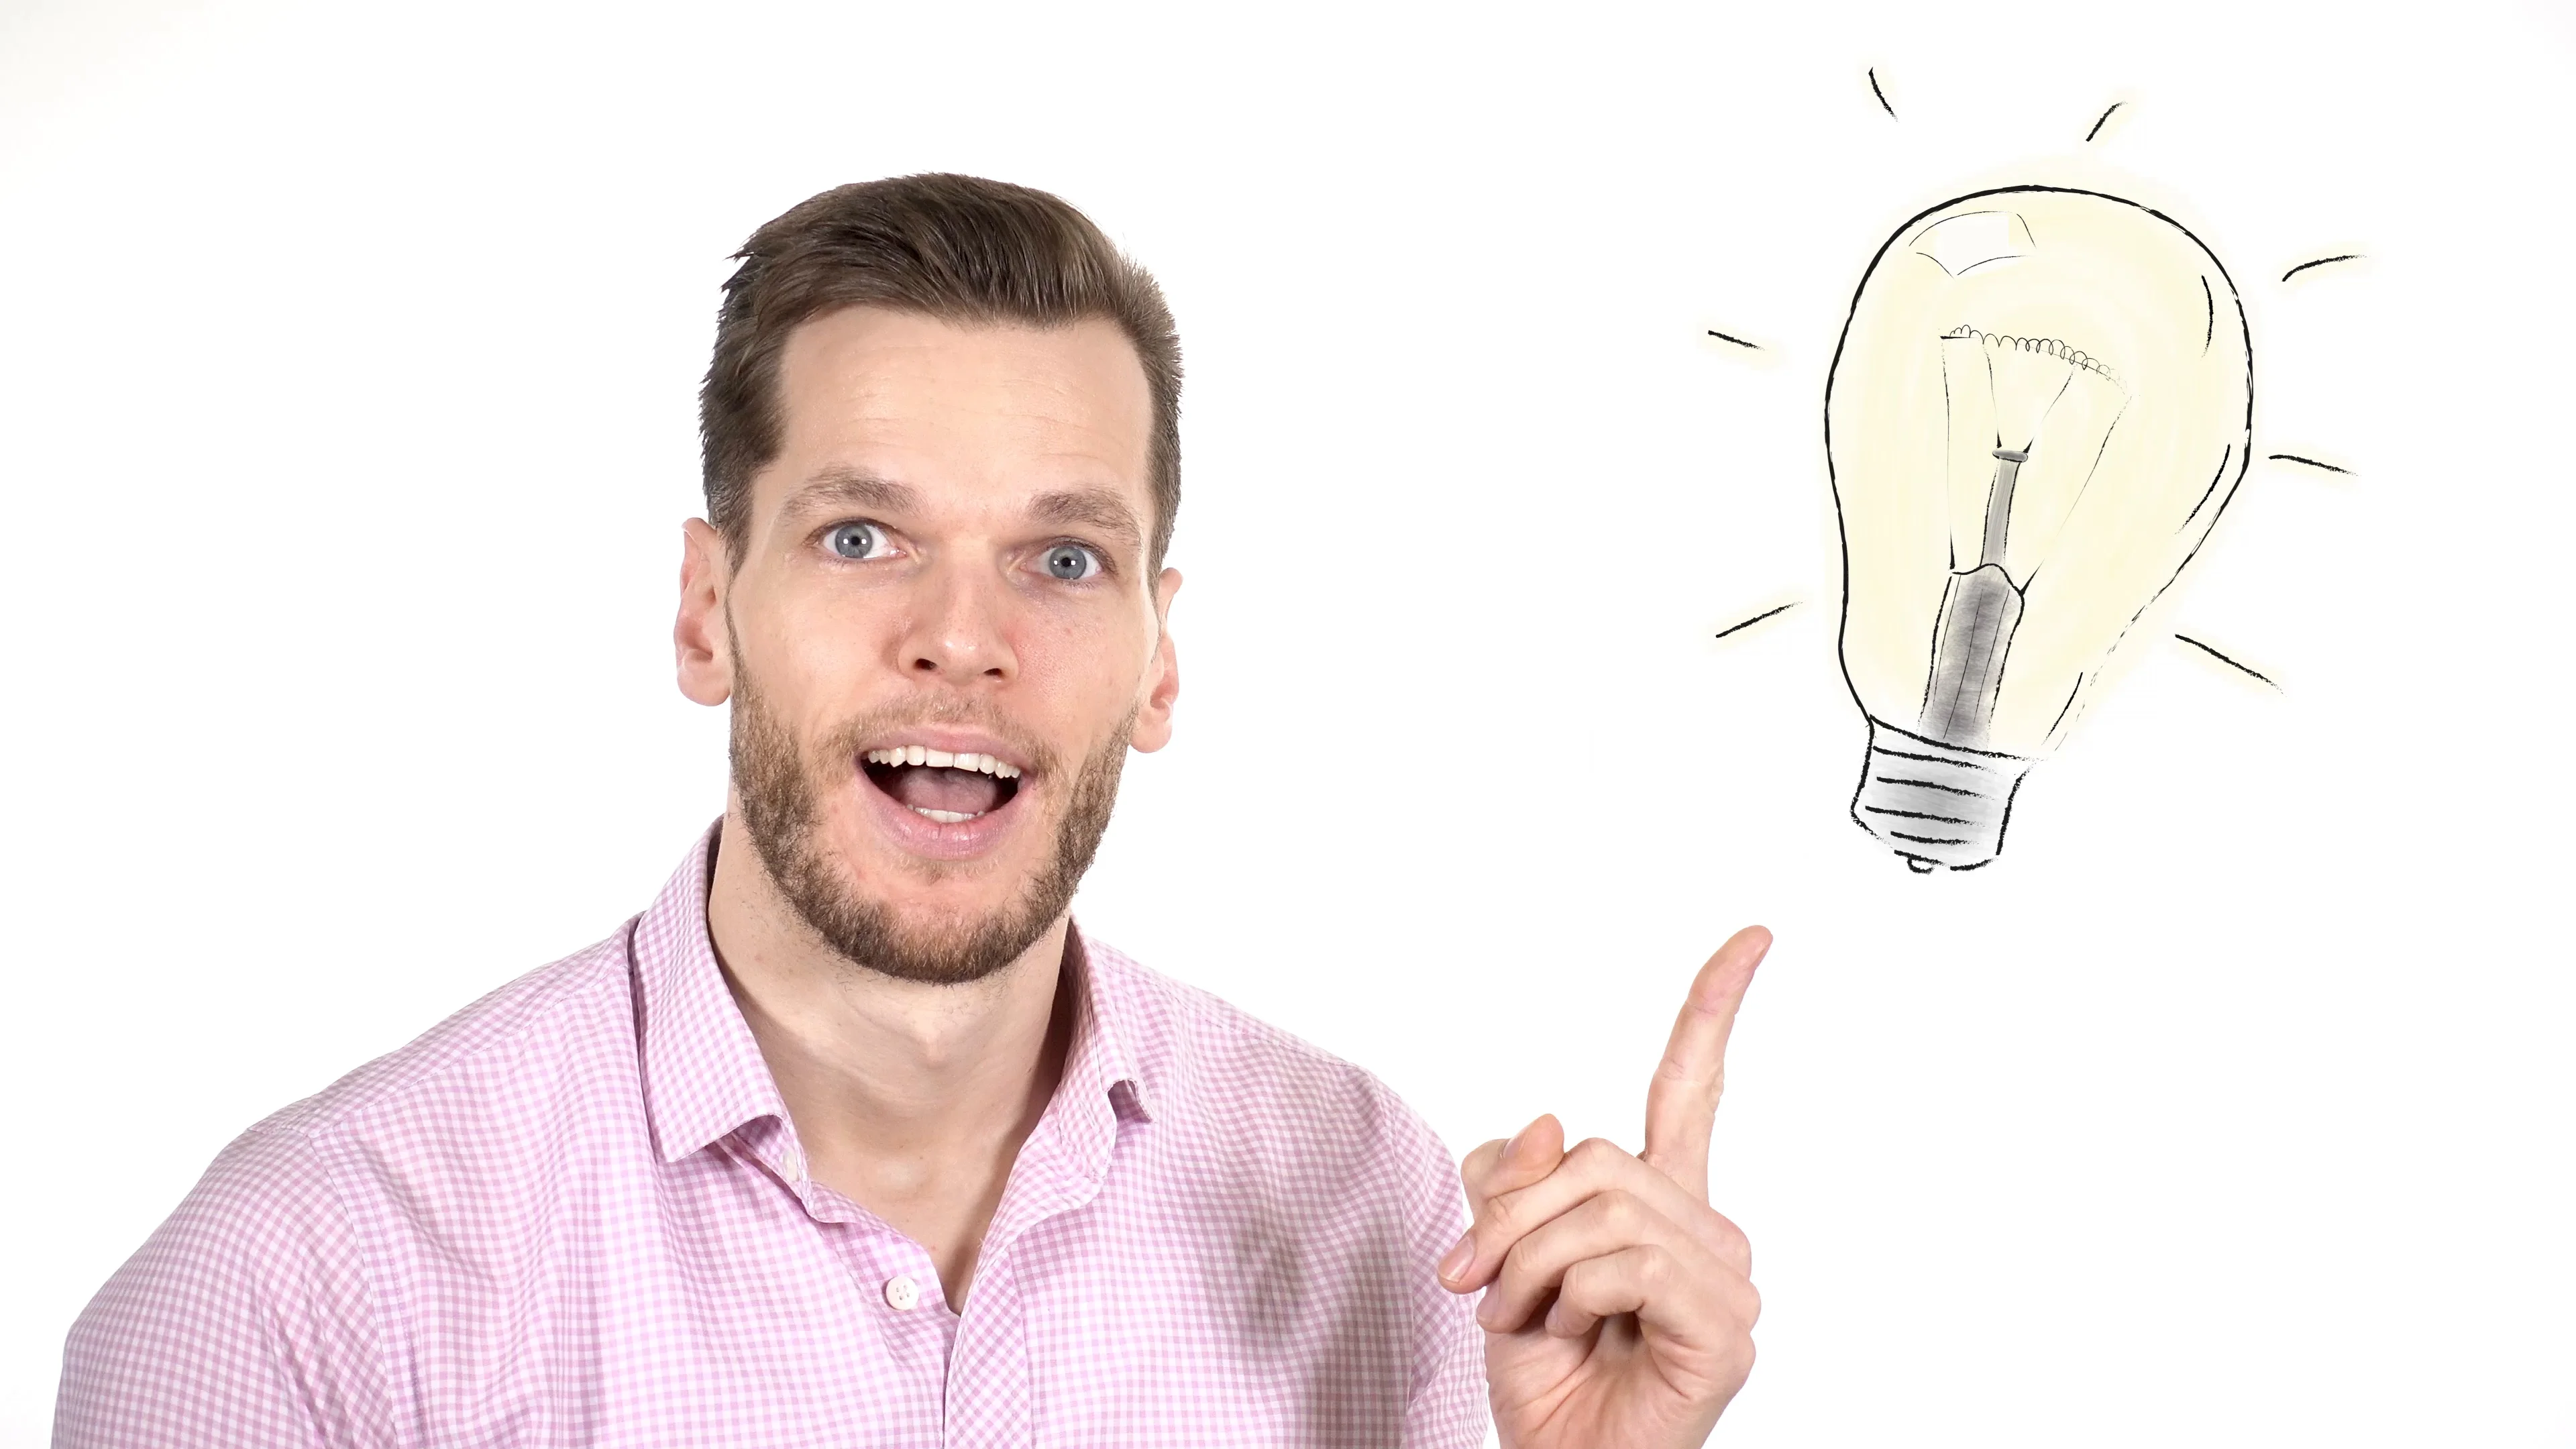 good idea light bulb